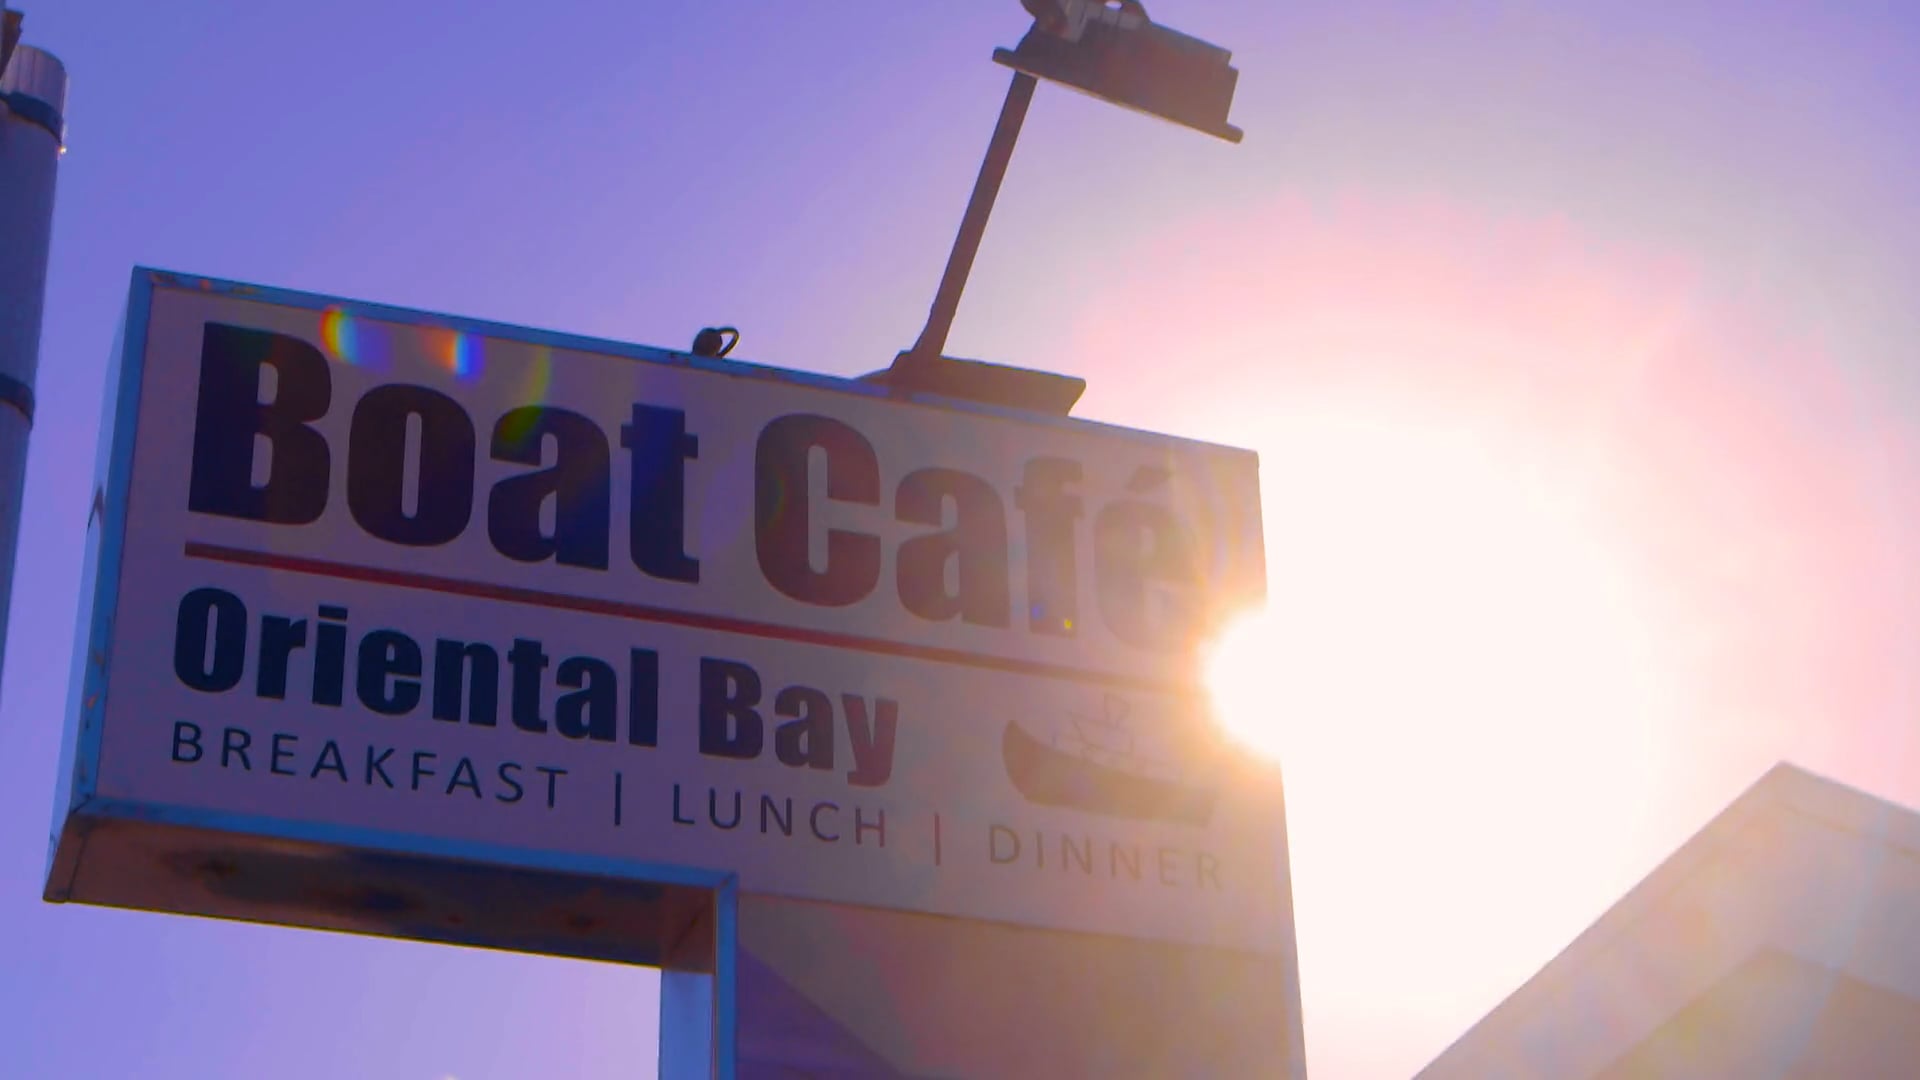 Boat Cafe